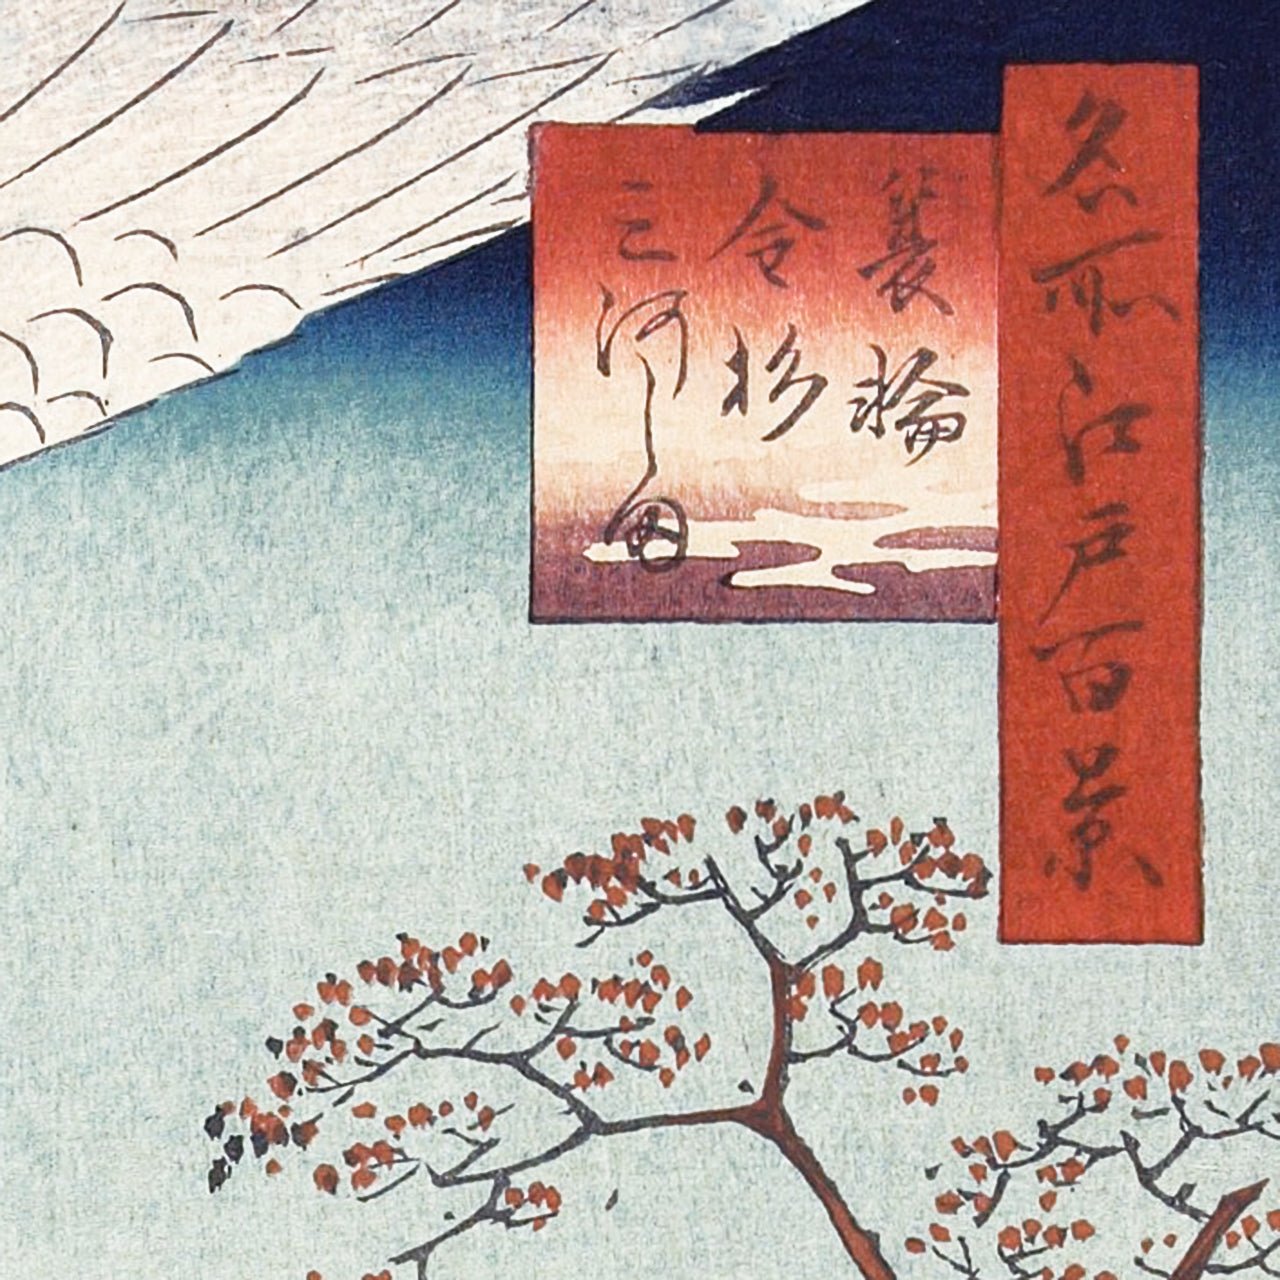 Minowa, Kanasugi and Mikawashima - Japonica Graphic